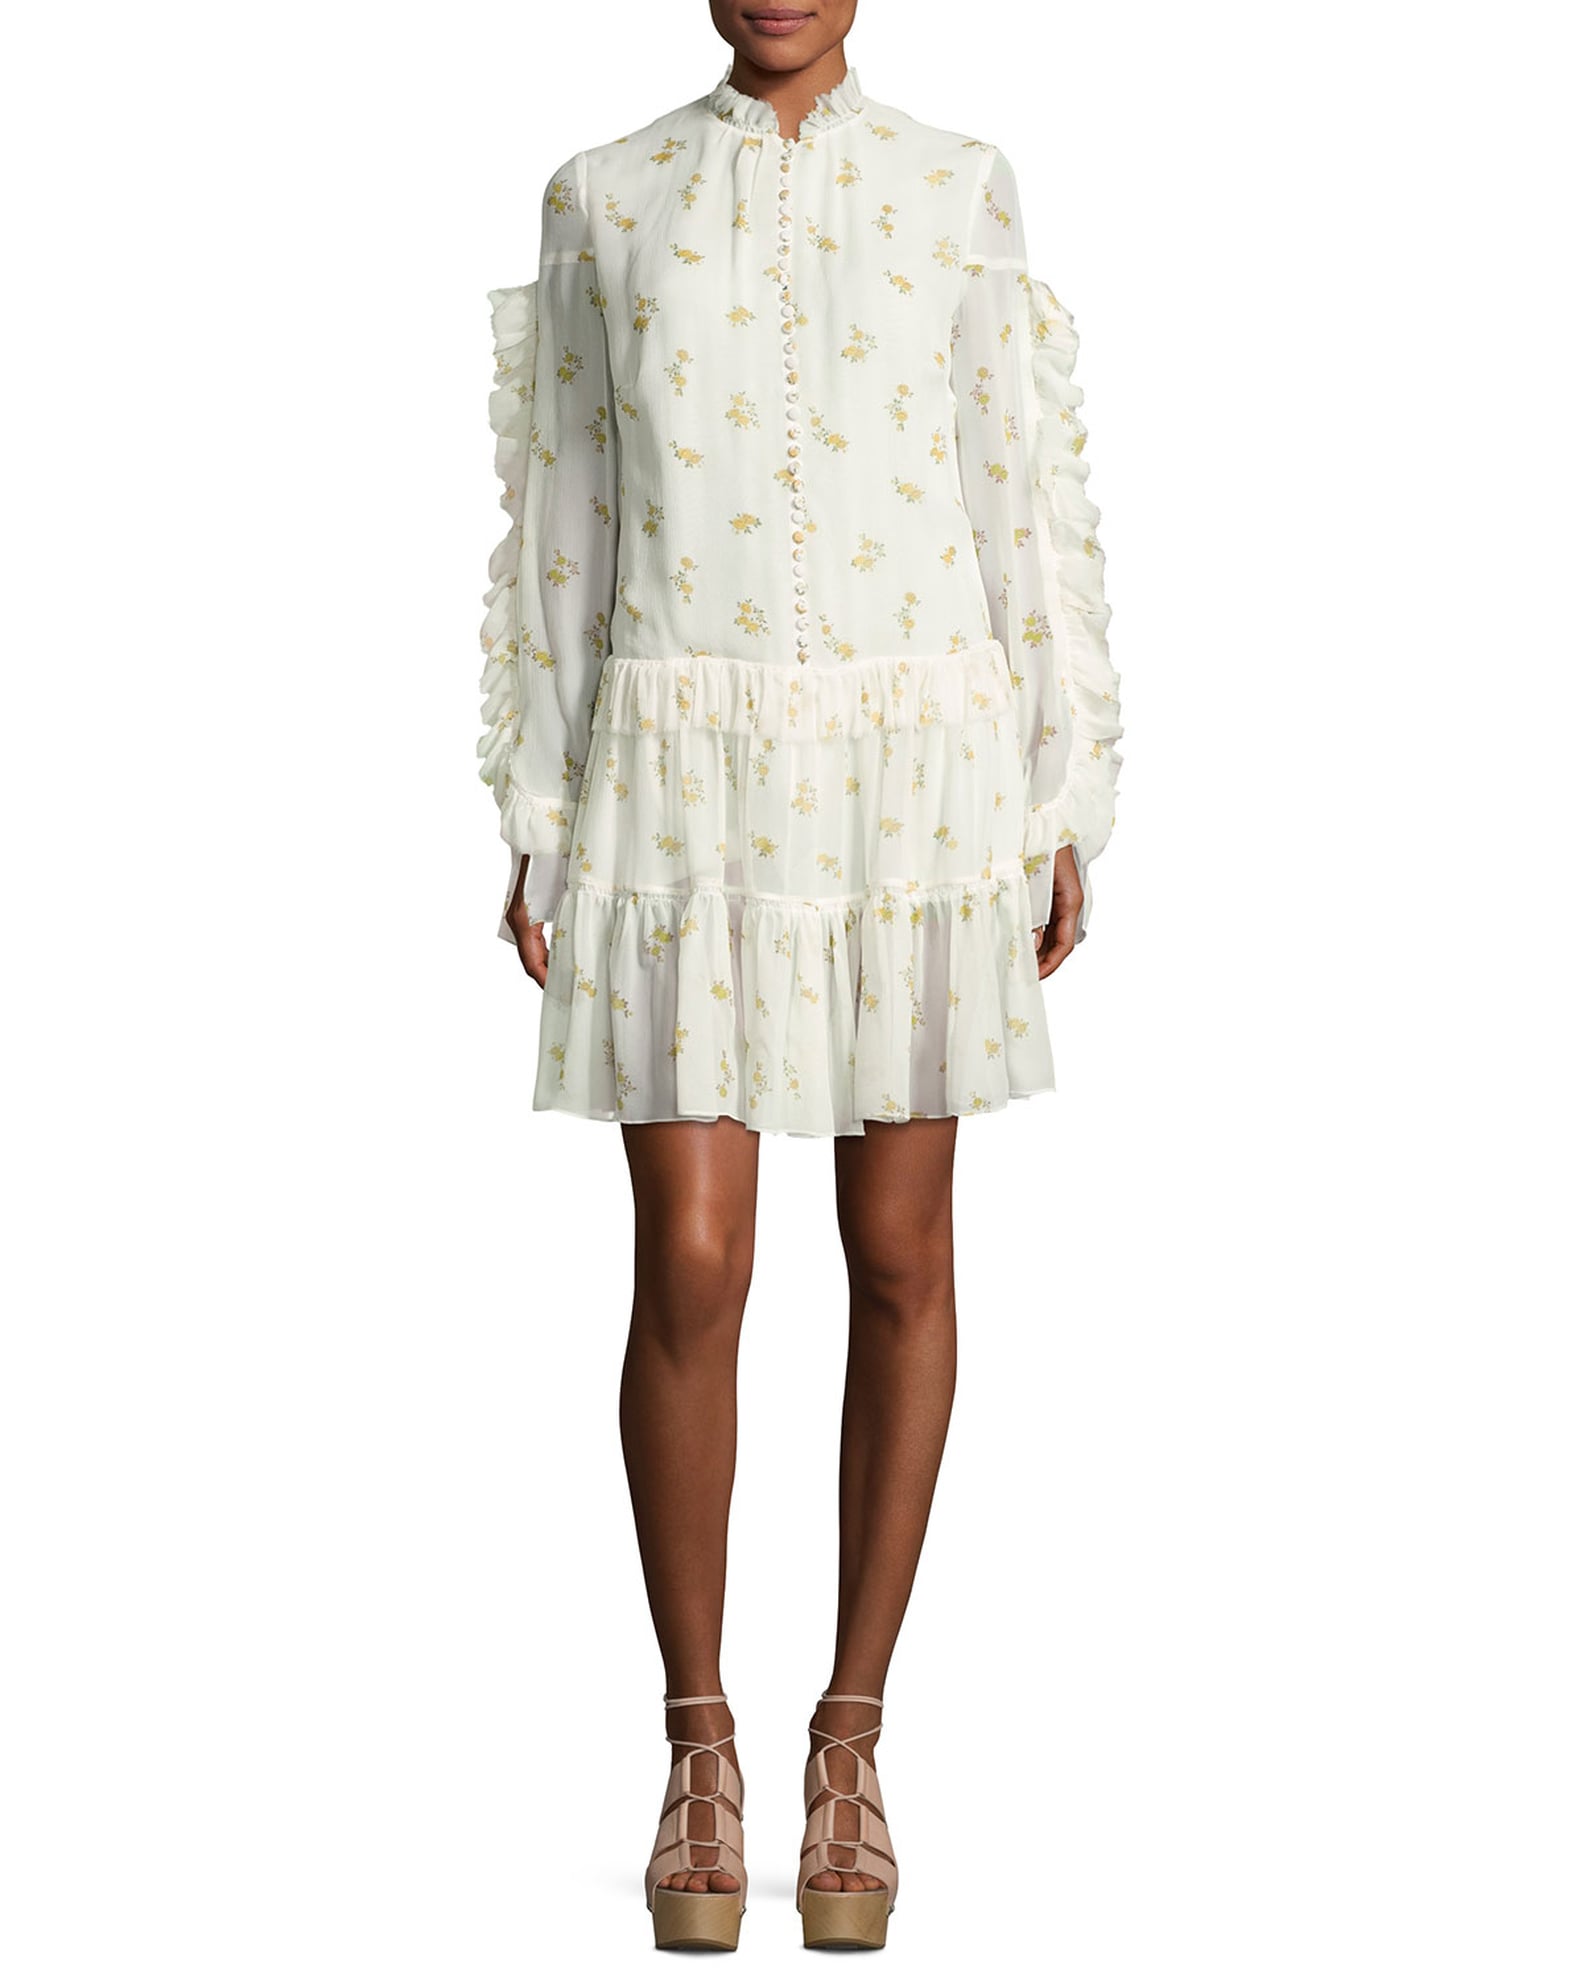 Beyonce's Zimmermann Floral Dress | POPSUGAR Fashion